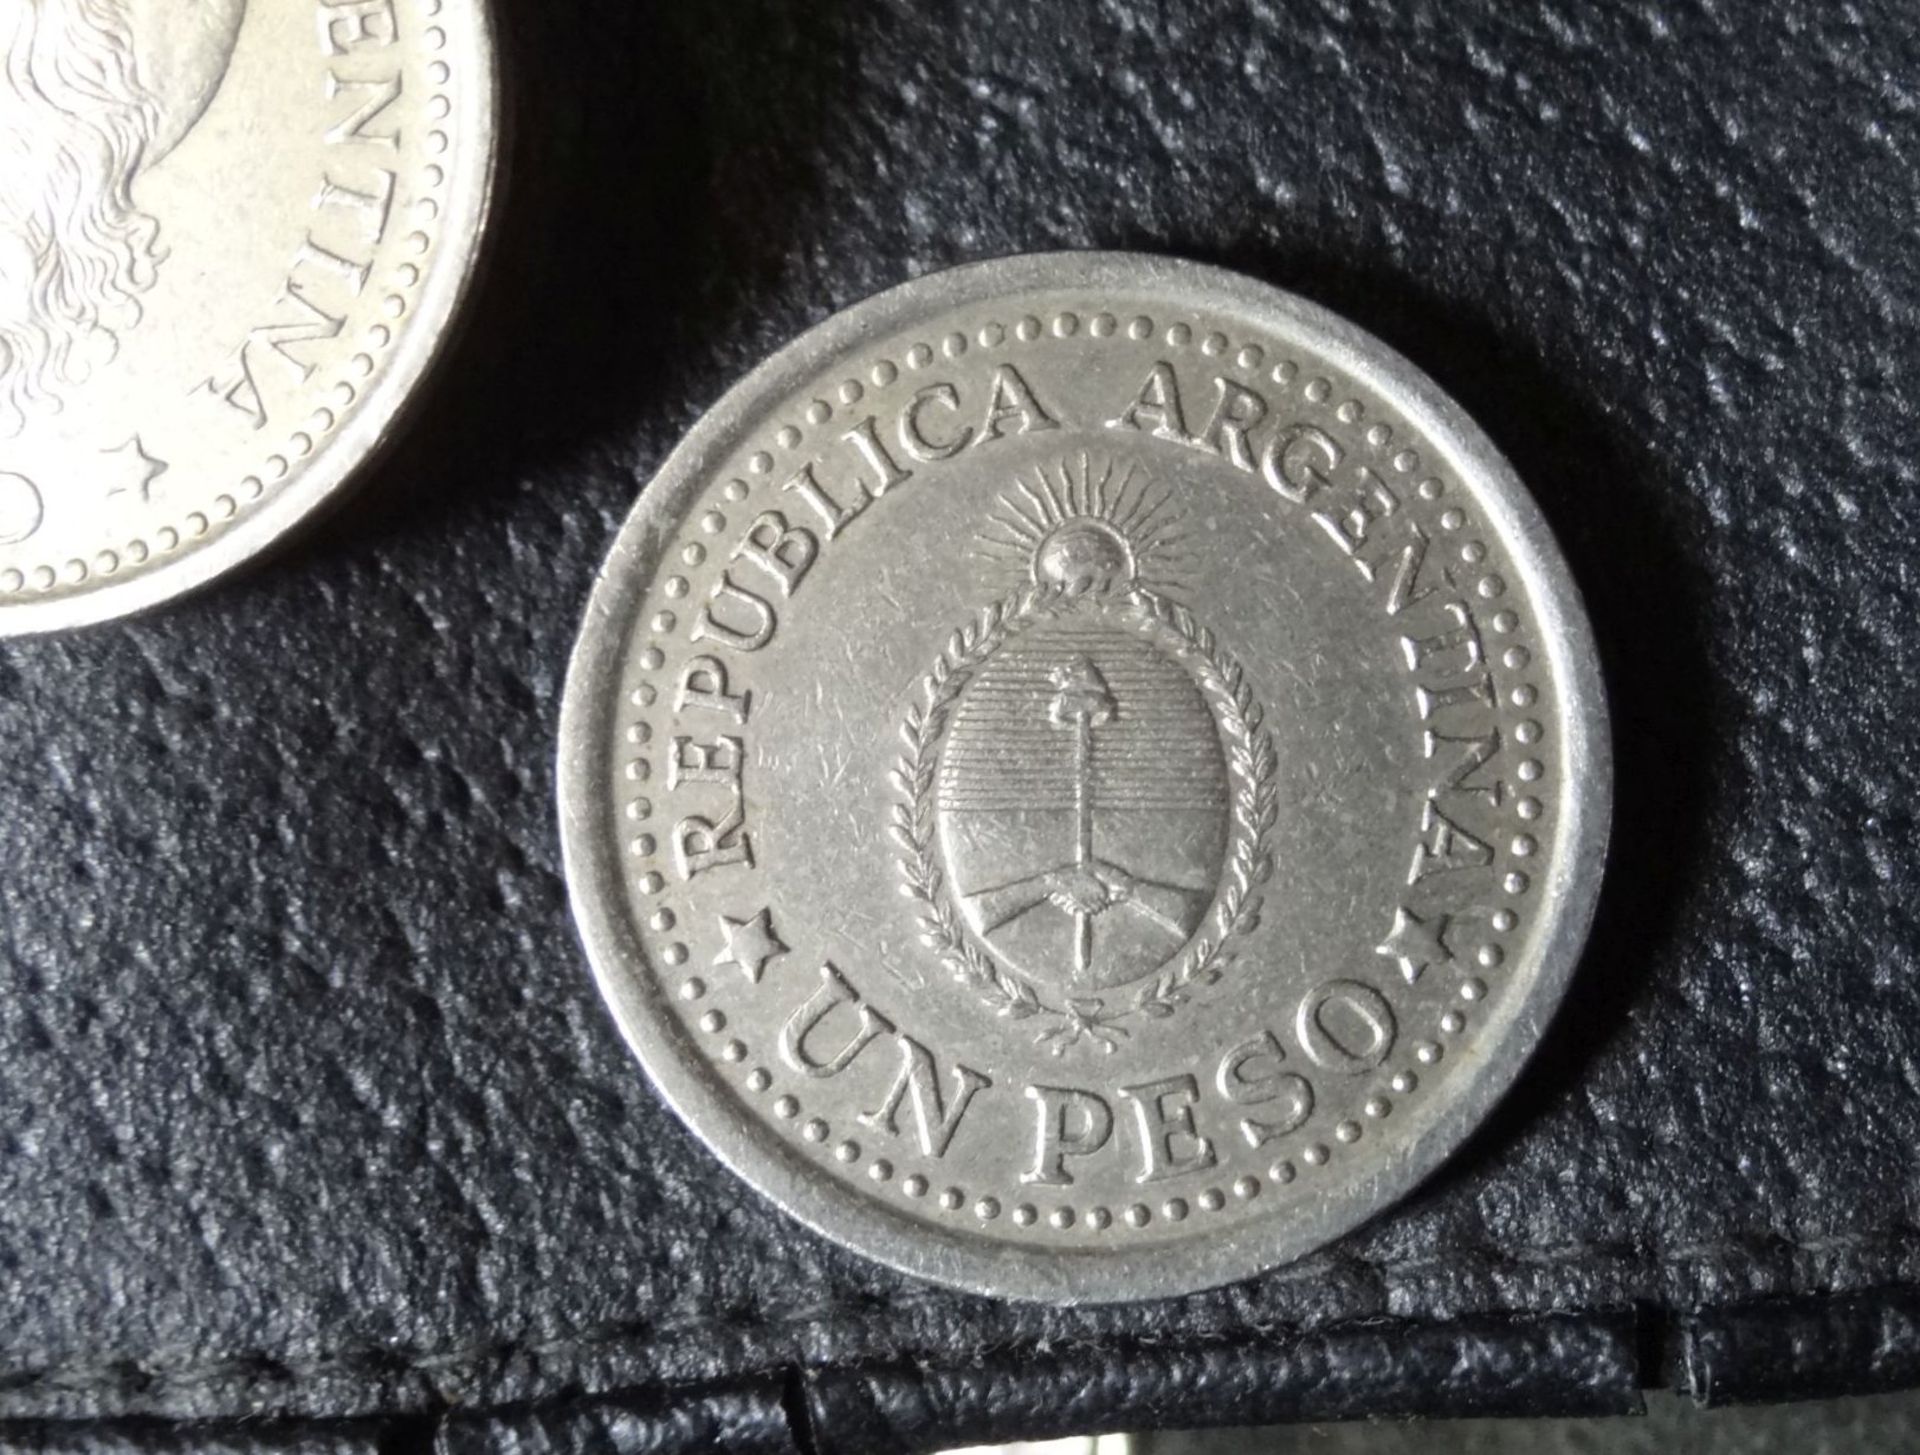 Münzgürtel mit 1 Peso Münzen, Argentinien um 1950/60, zwei feh - Bild 6 aus 8